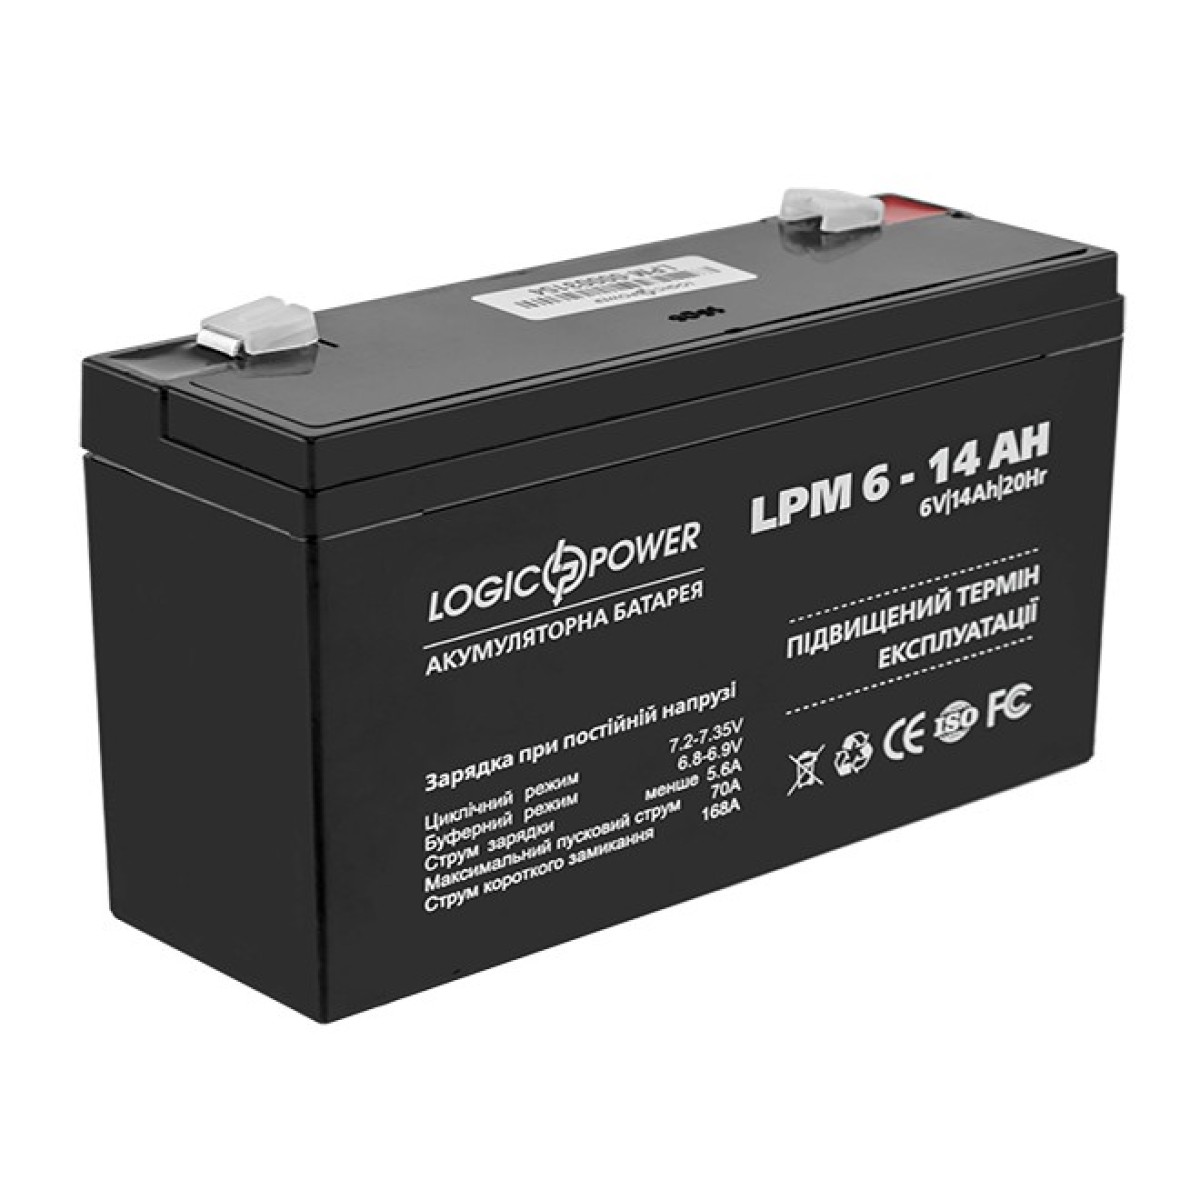 Акумулятор свинцево-кислотний LogicPower AGM LPM 6-14 AH 256_256.jpg